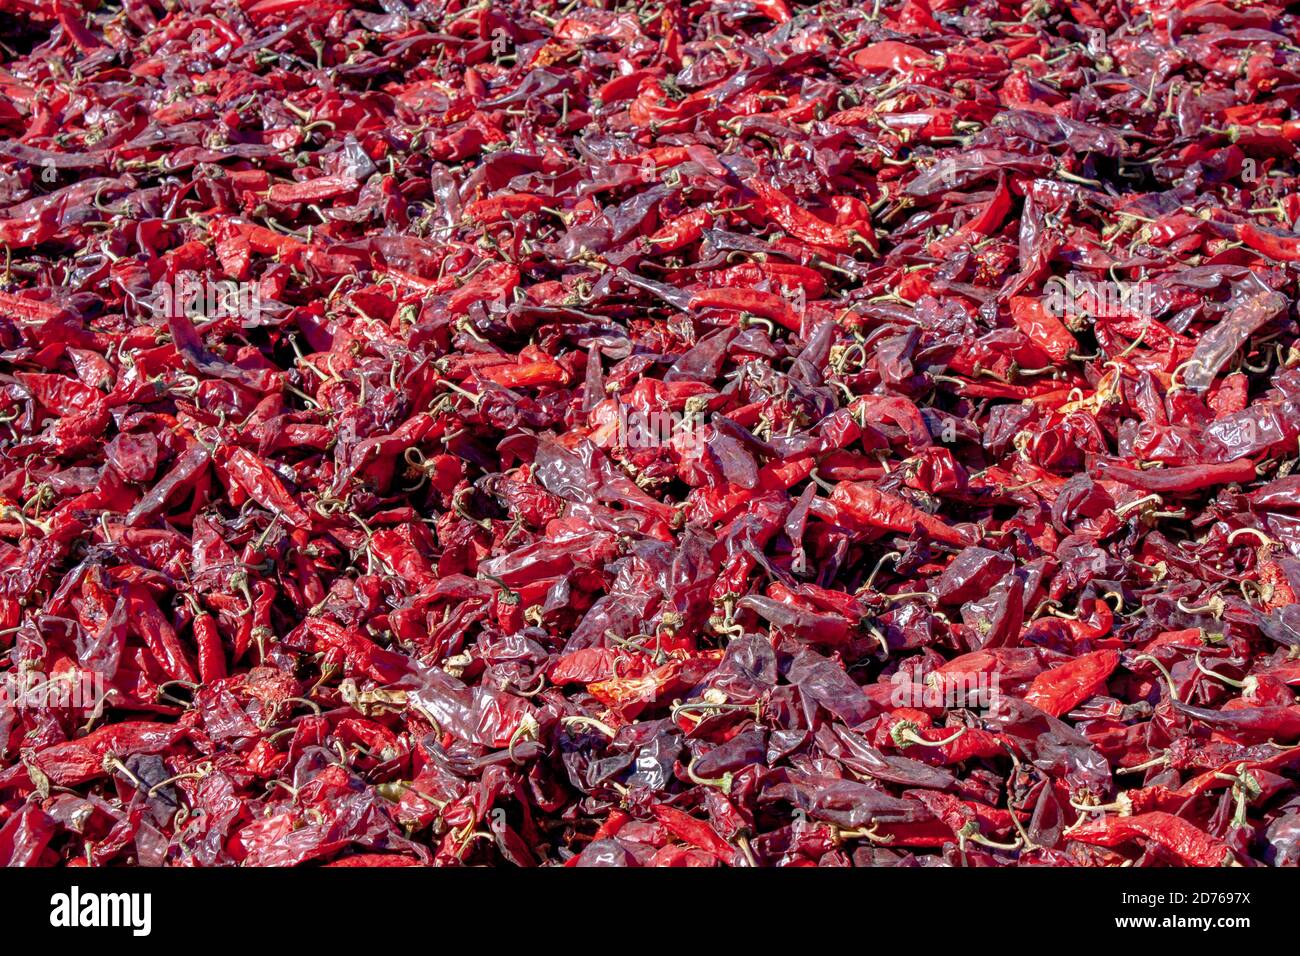 Hatch Valley rote chilischoten trocknen unter der Sonne, nachdem sie bei der Ernte der Chilischoten in Albuquerque, New Mexico, USA geerntet wurden Stockfoto